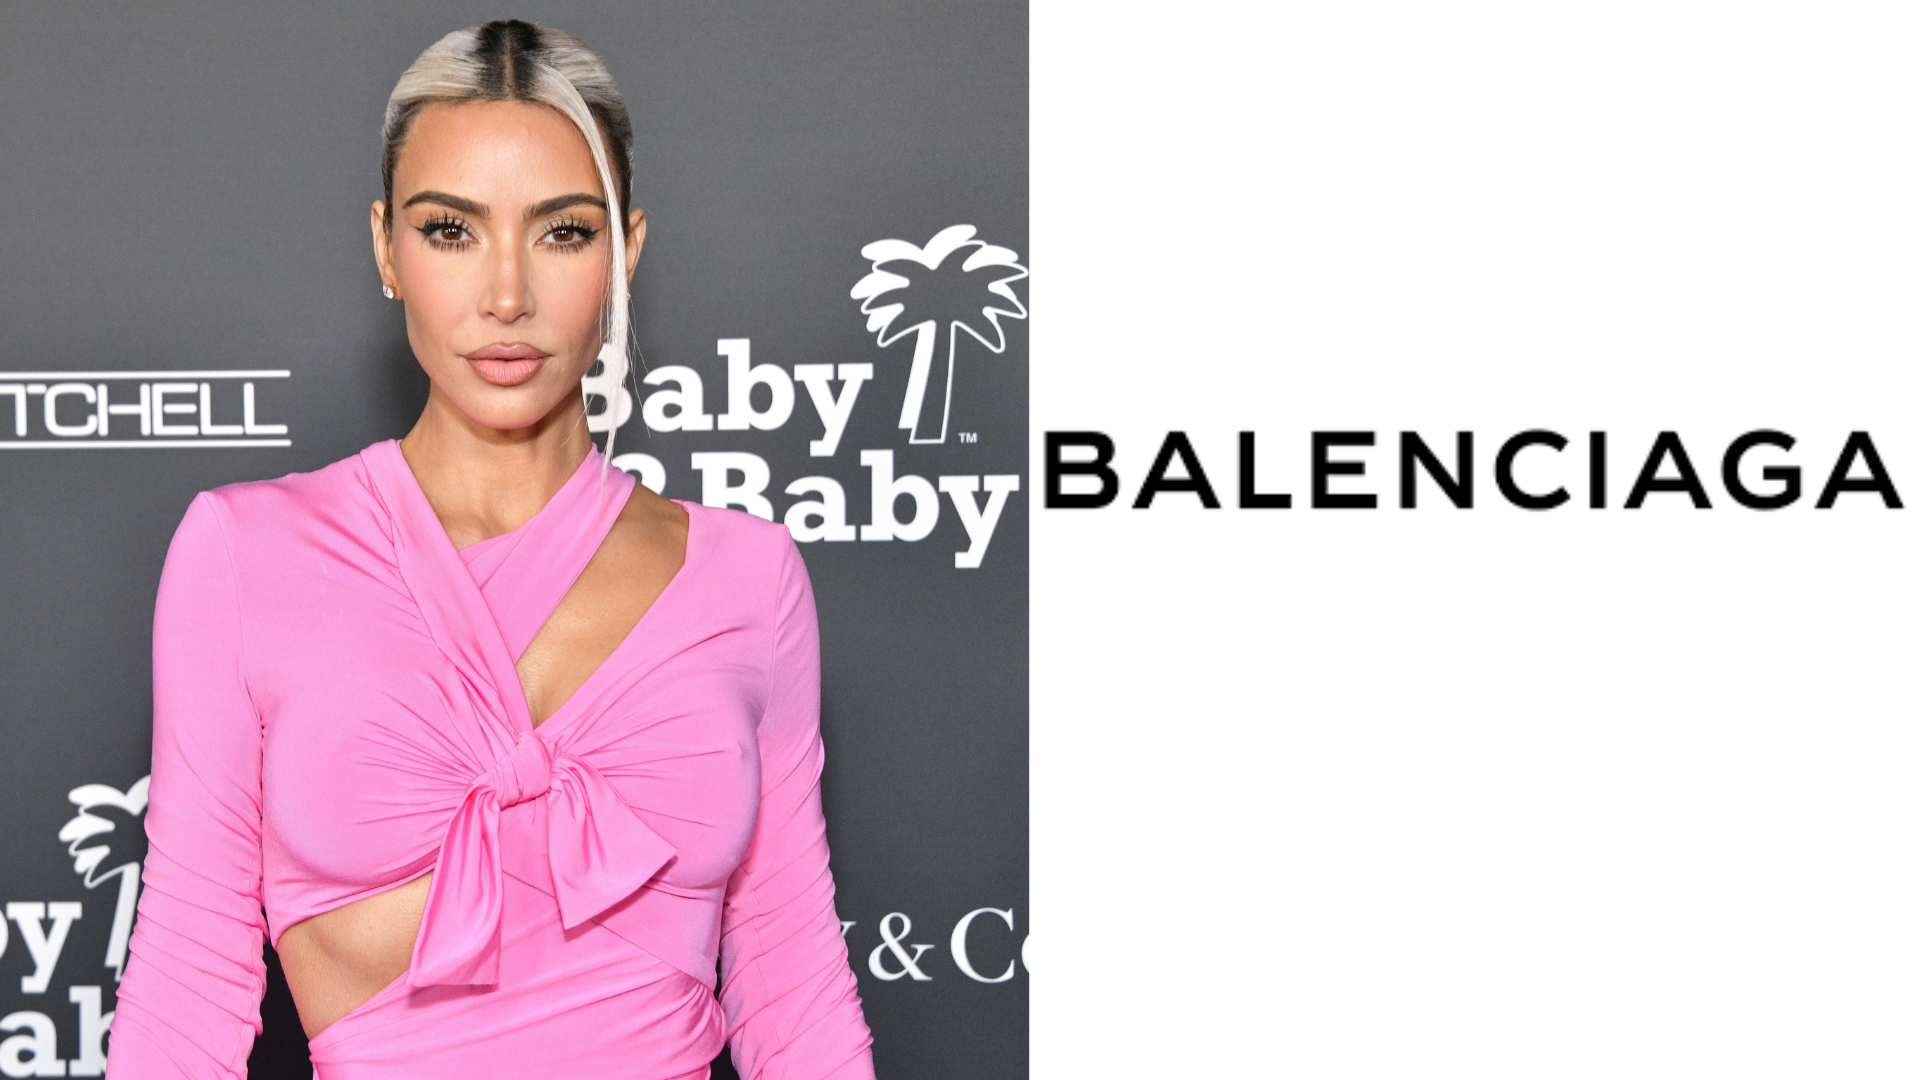 Kim Kardashian quebra silêncio sobre caso da Balenciaga e comenta futuro com a marca: “Enojada e indignada”